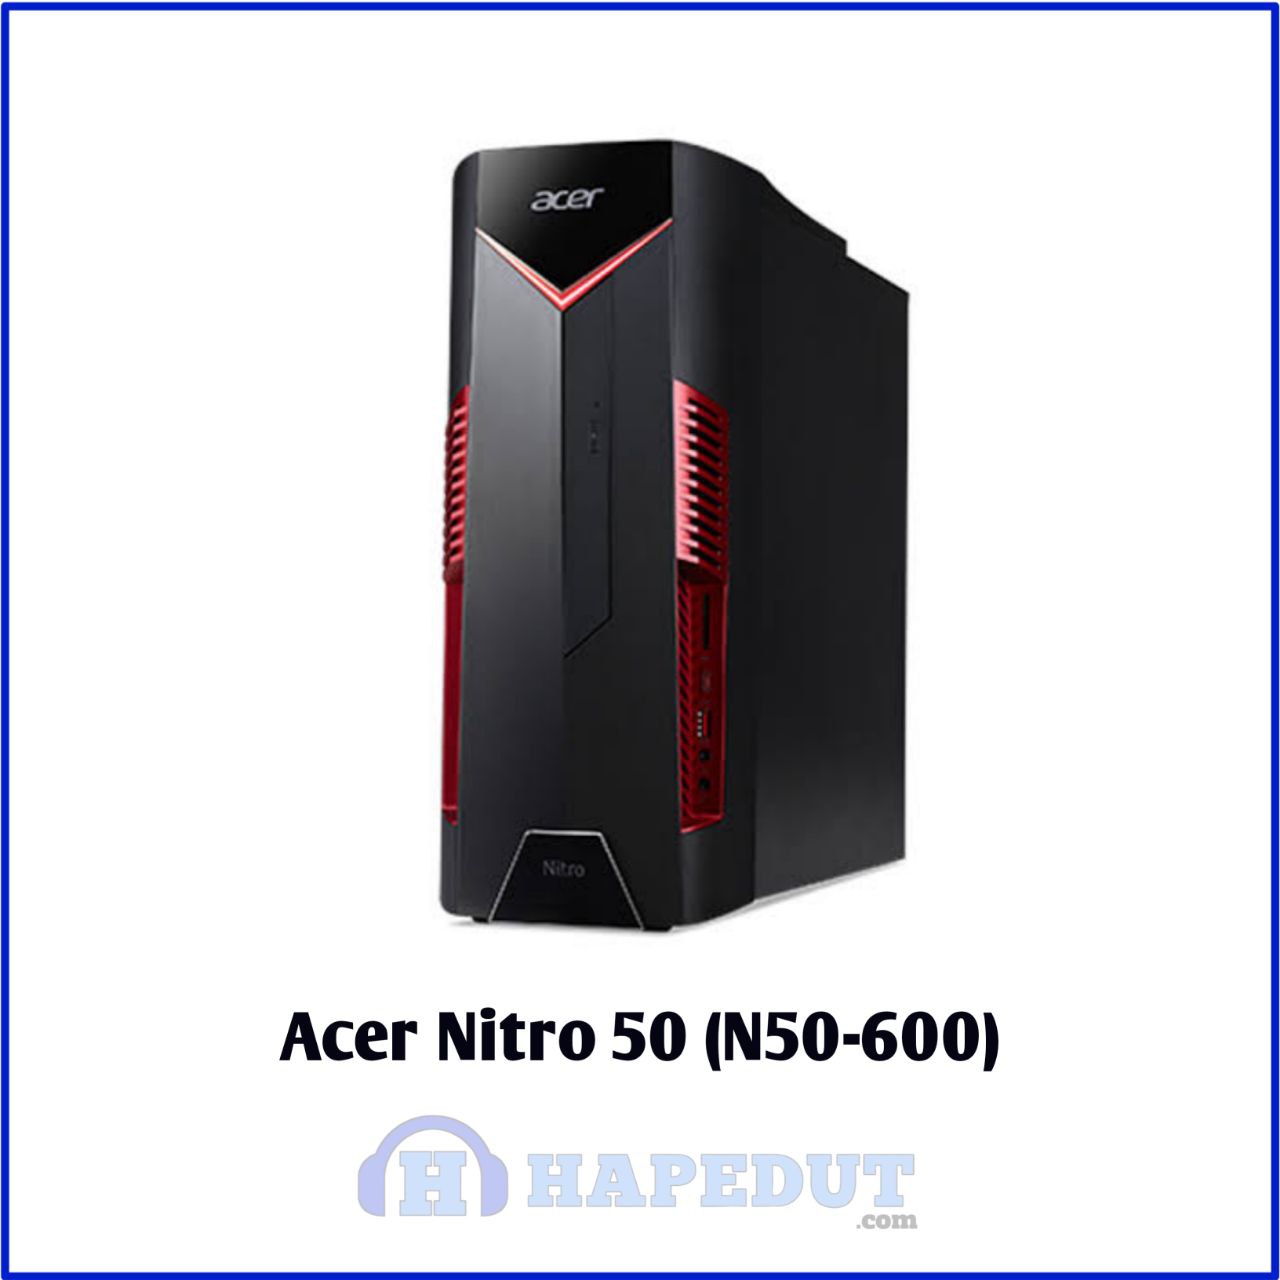 Acer Nitro 50 (N50-600) : Hapedut